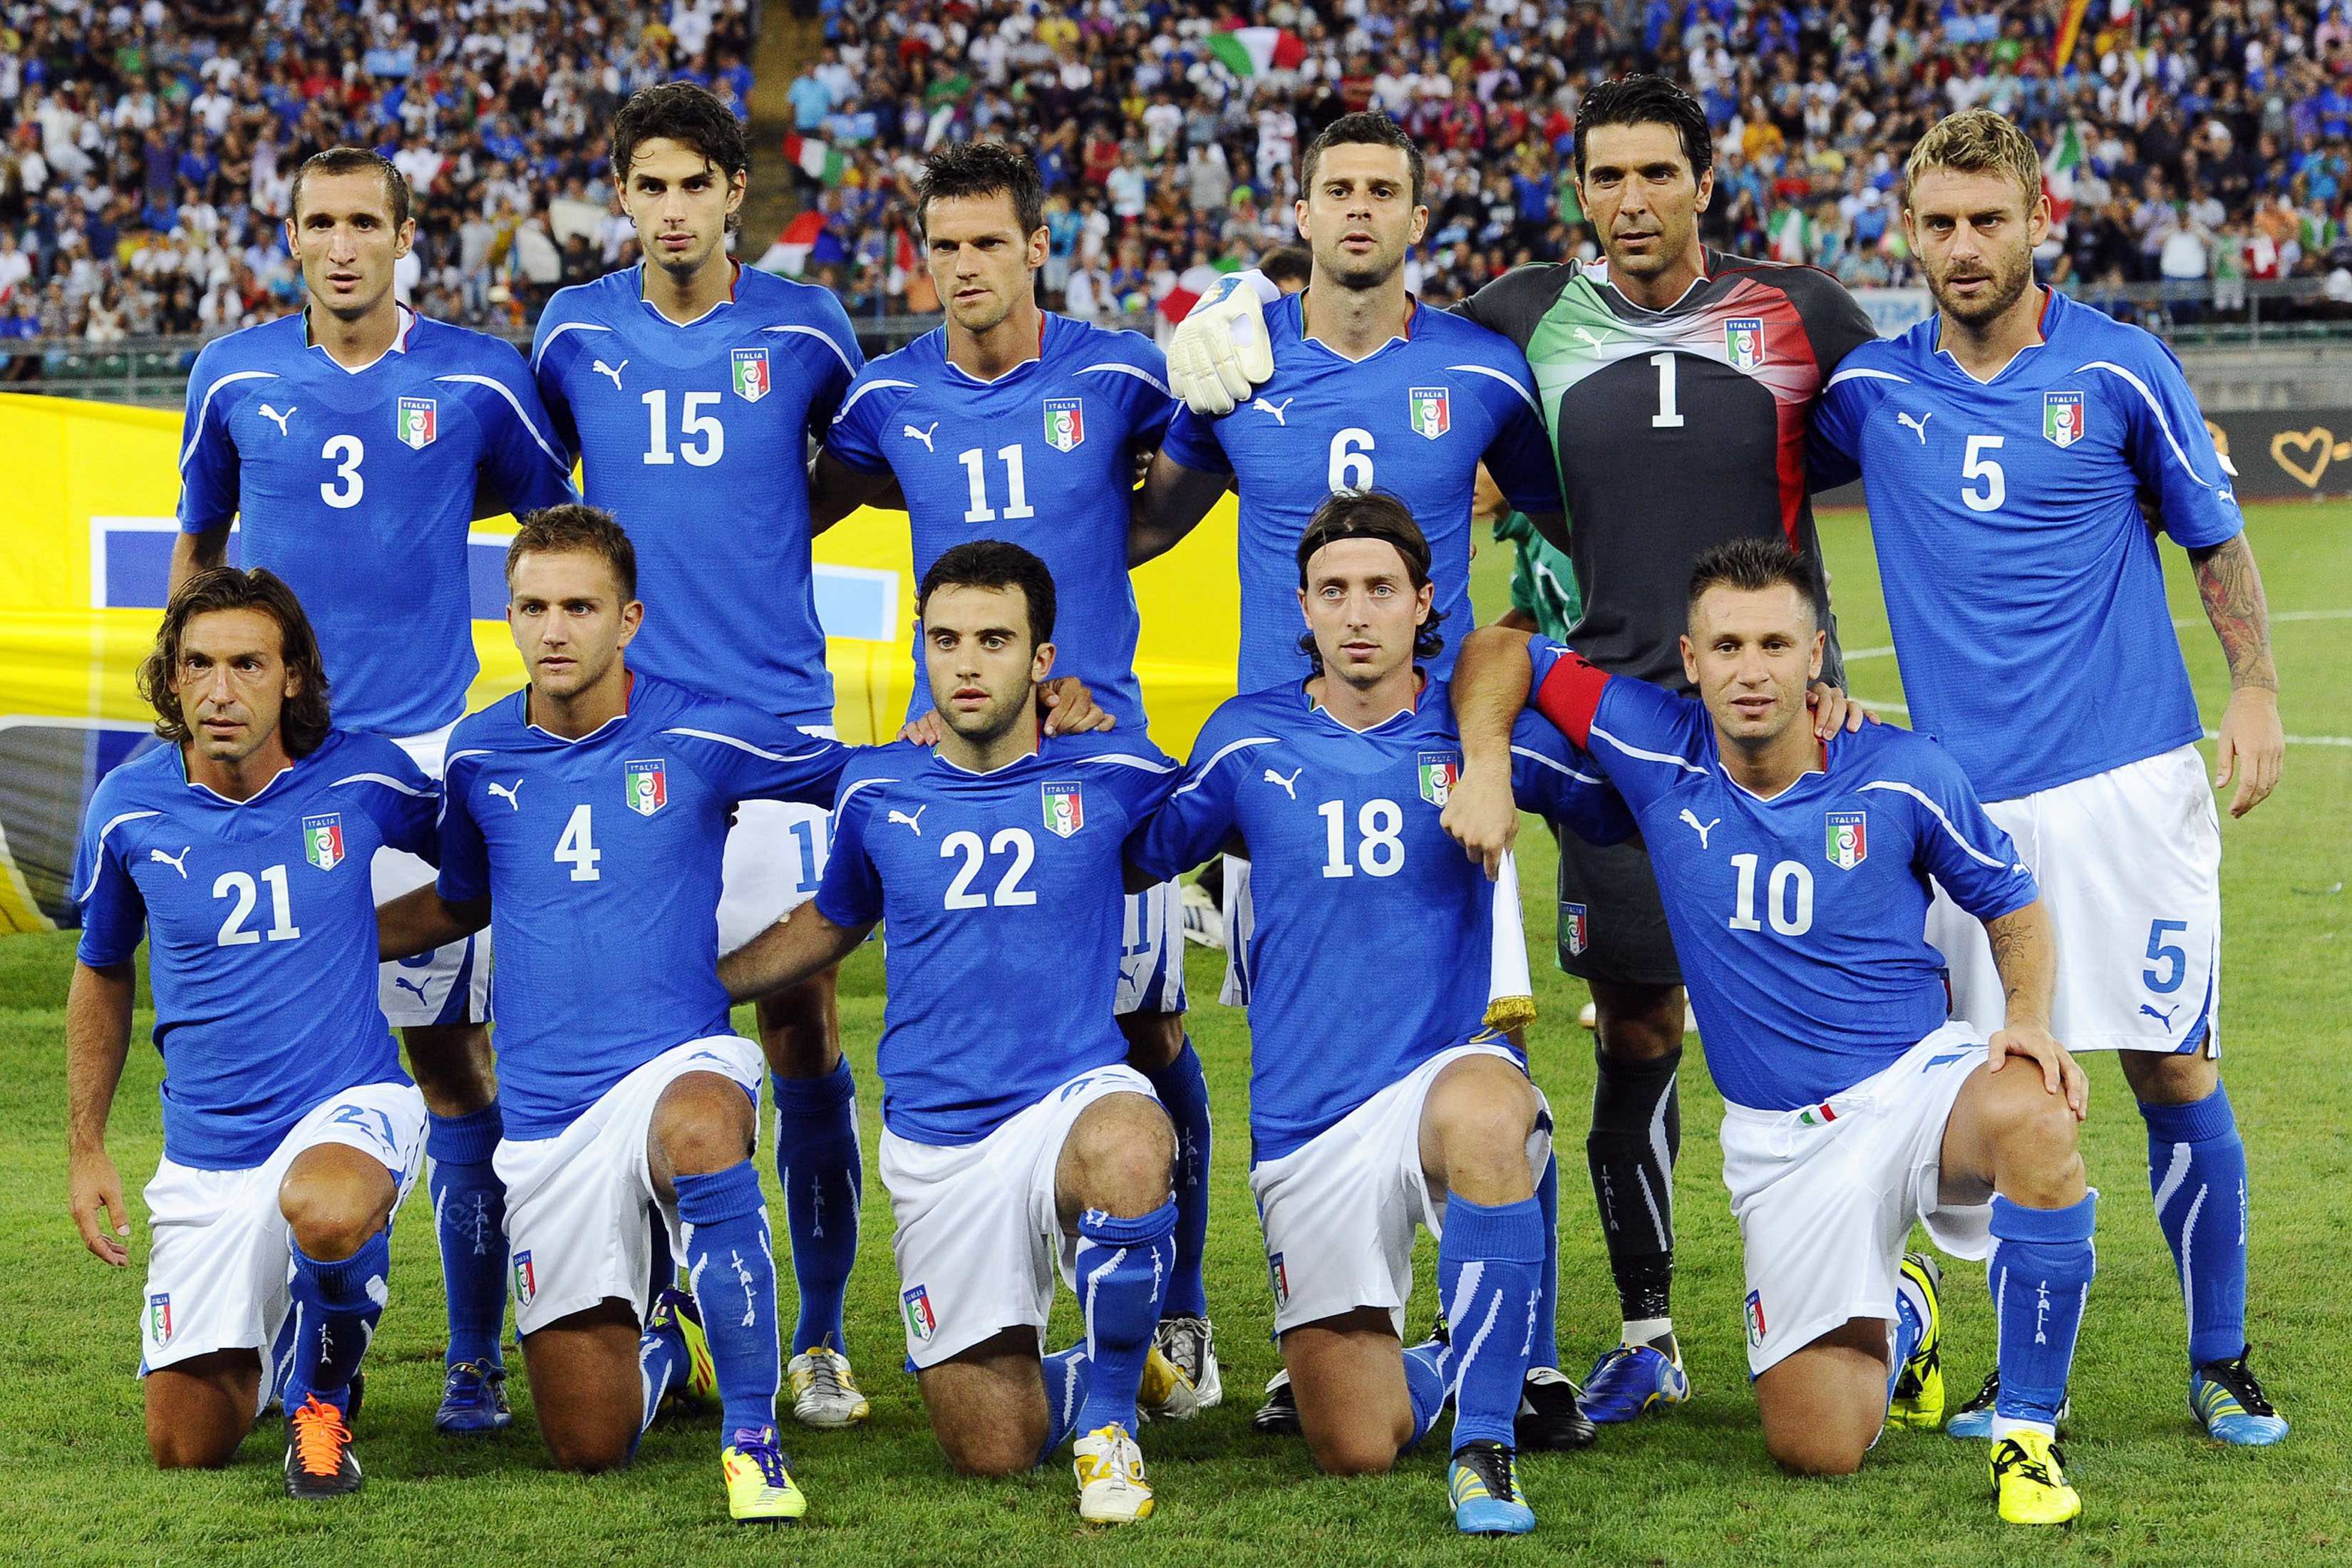 1920x1080px Italy Football Team (930.15 KB).09.2015